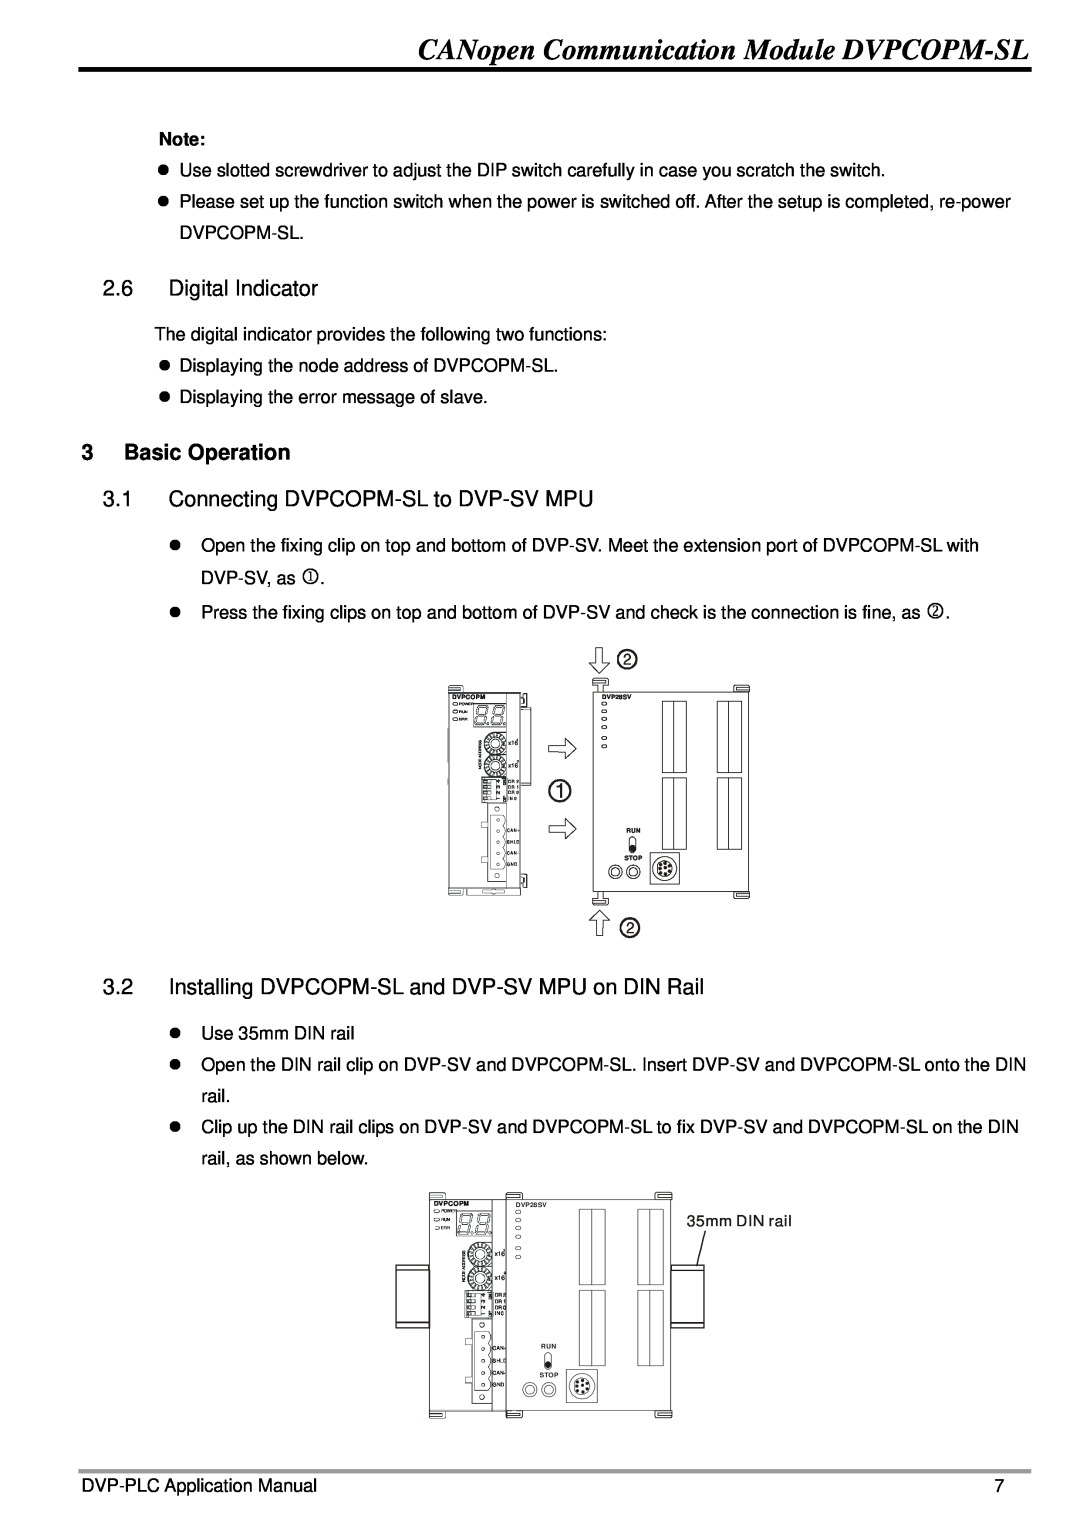 Delta Electronics manual Digital Indicator, Basic Operation, Connecting DVPCOPM-SL to DVP-SV MPU 